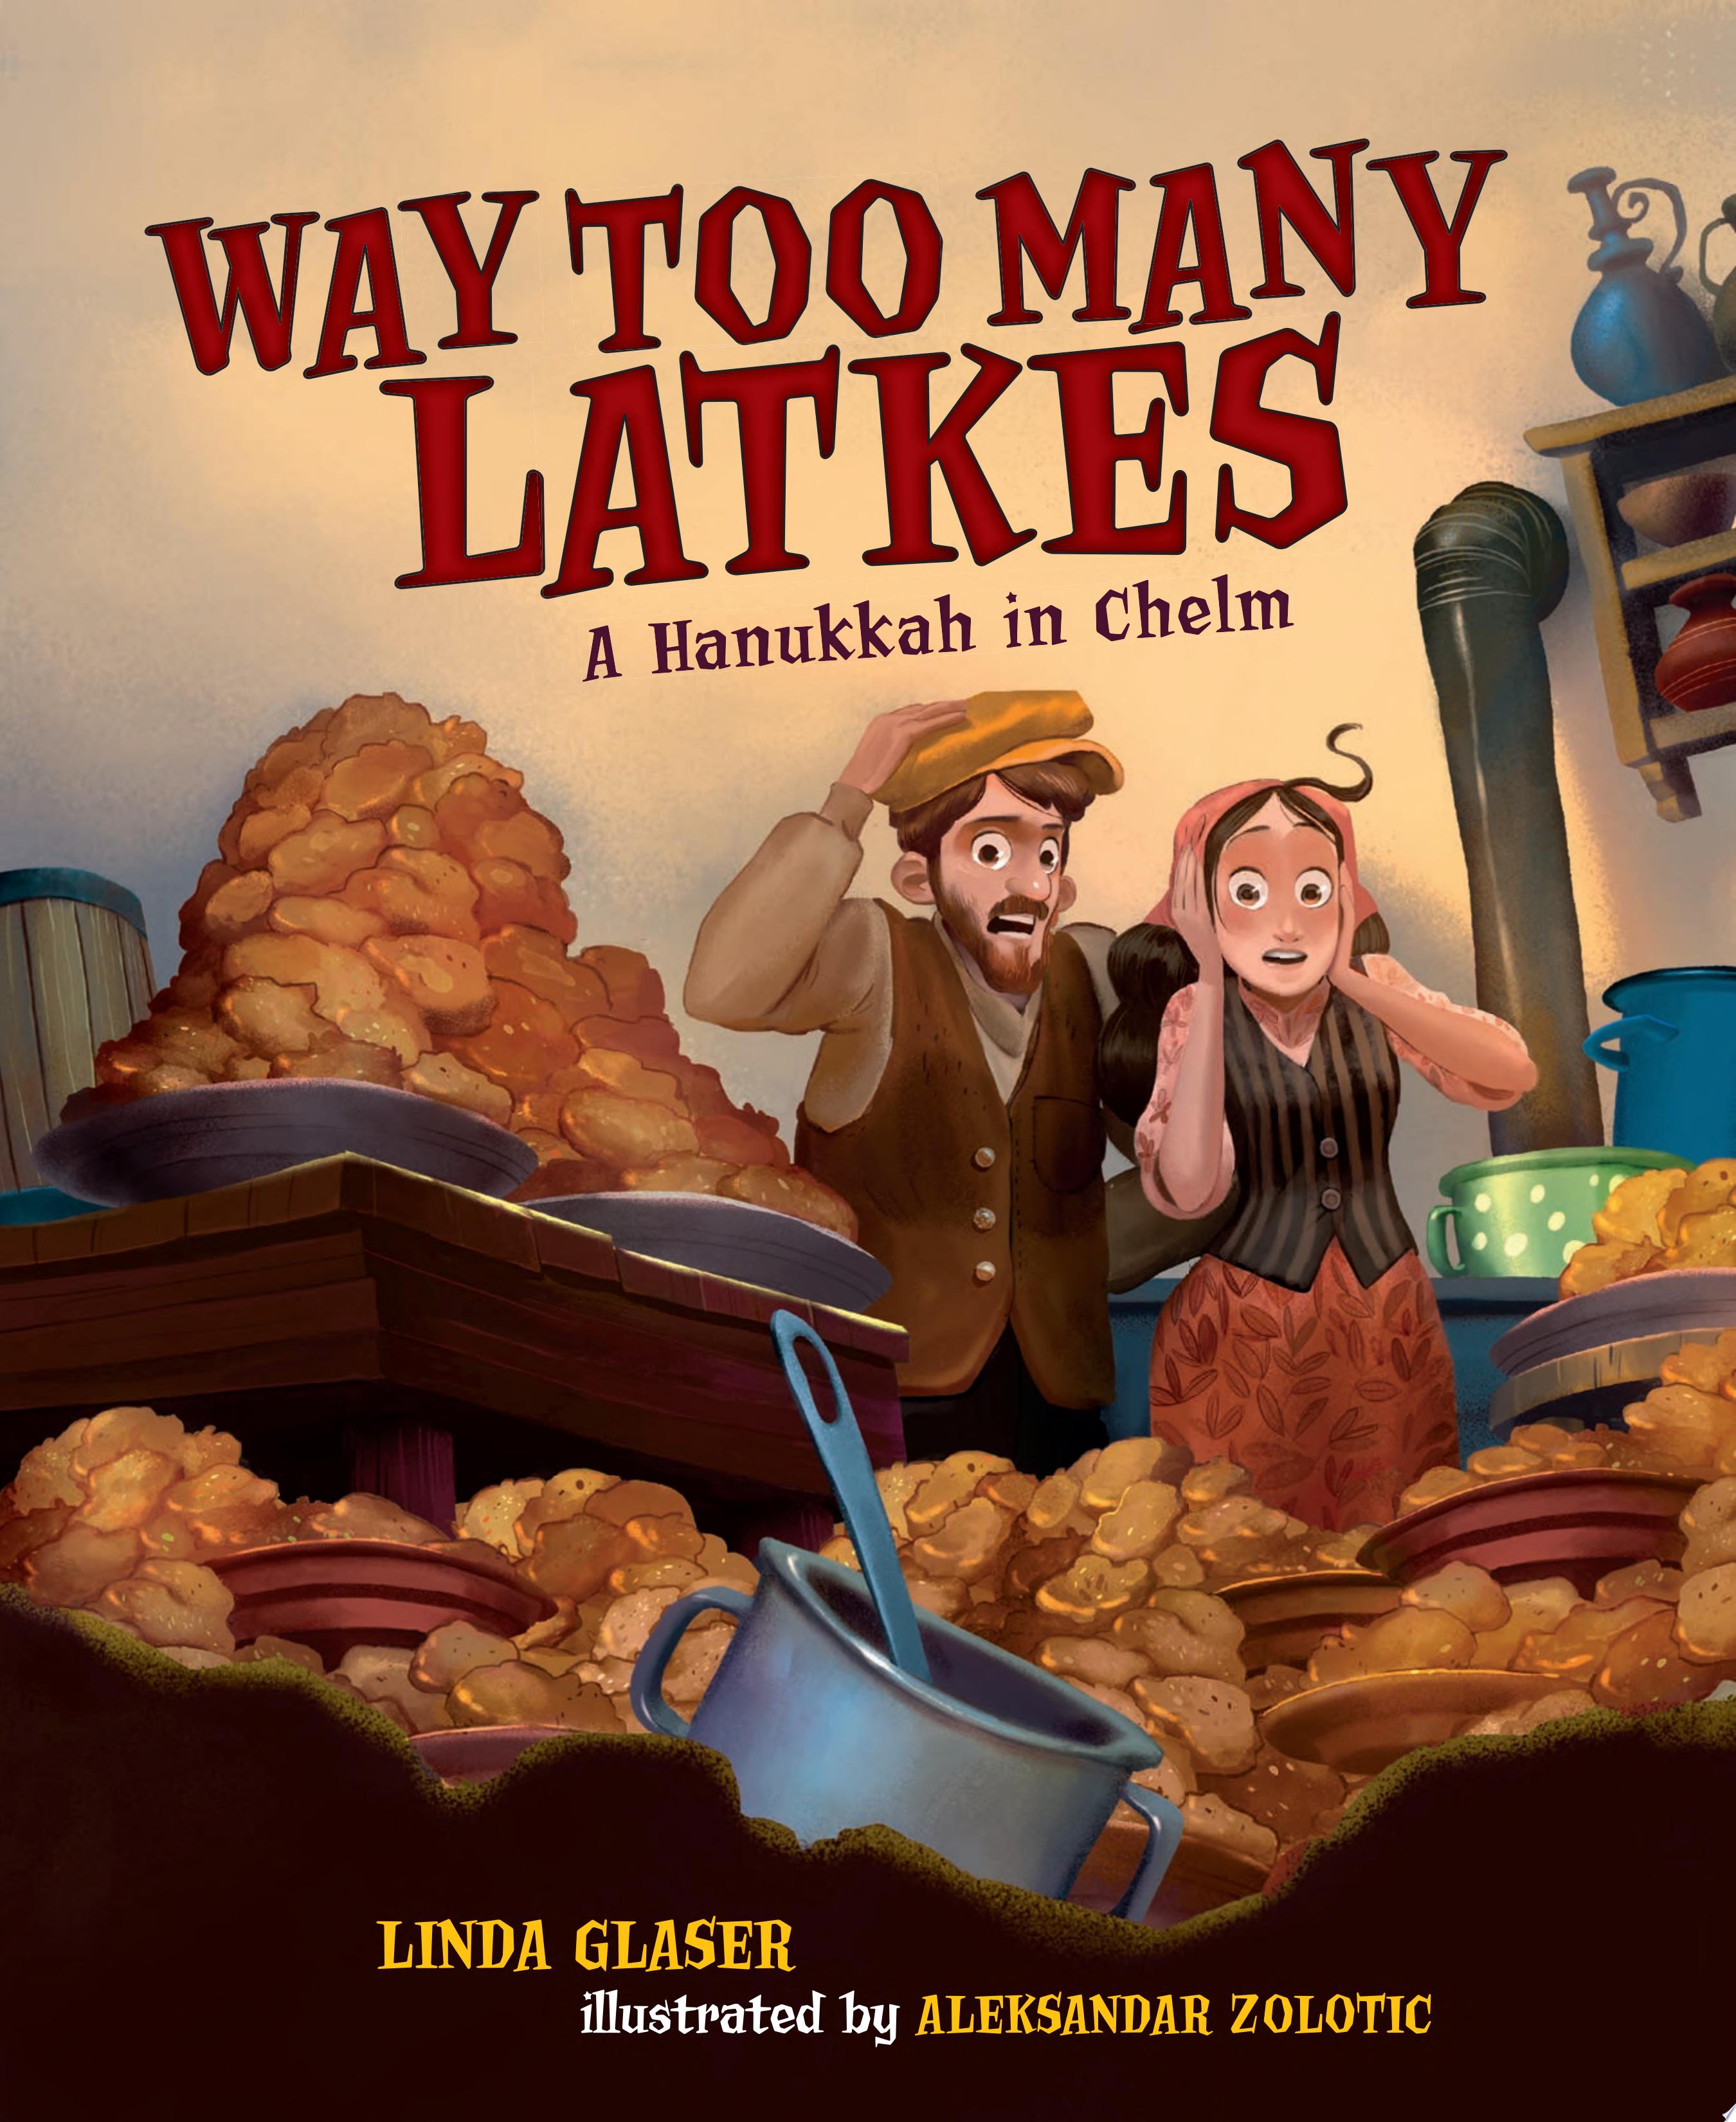 Image for "Way Too Many Latkes"